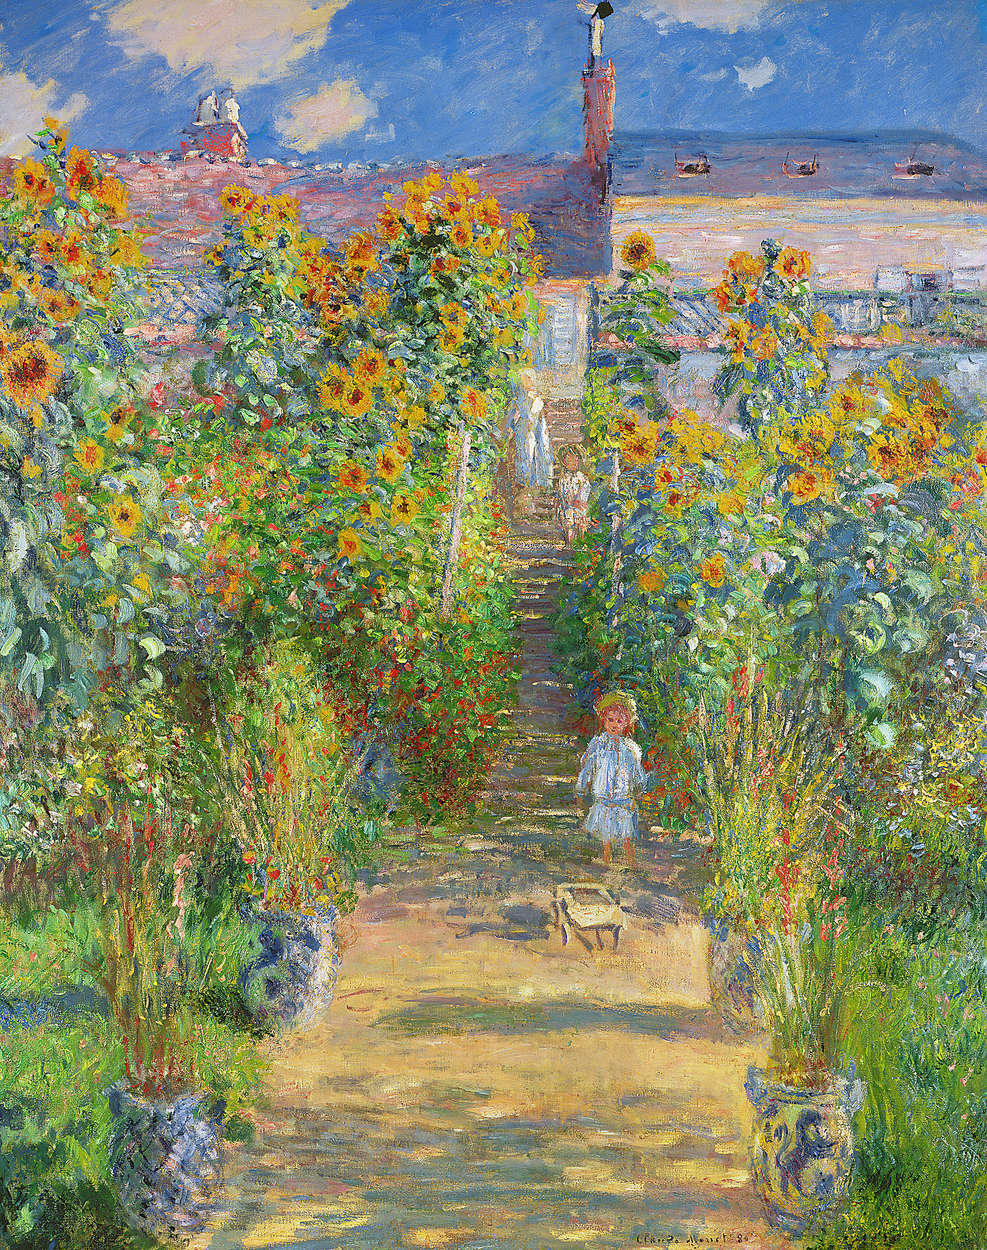             Muurschildering "De tuin van de kunstenaar in Vetheuil" van Claude Monet
        